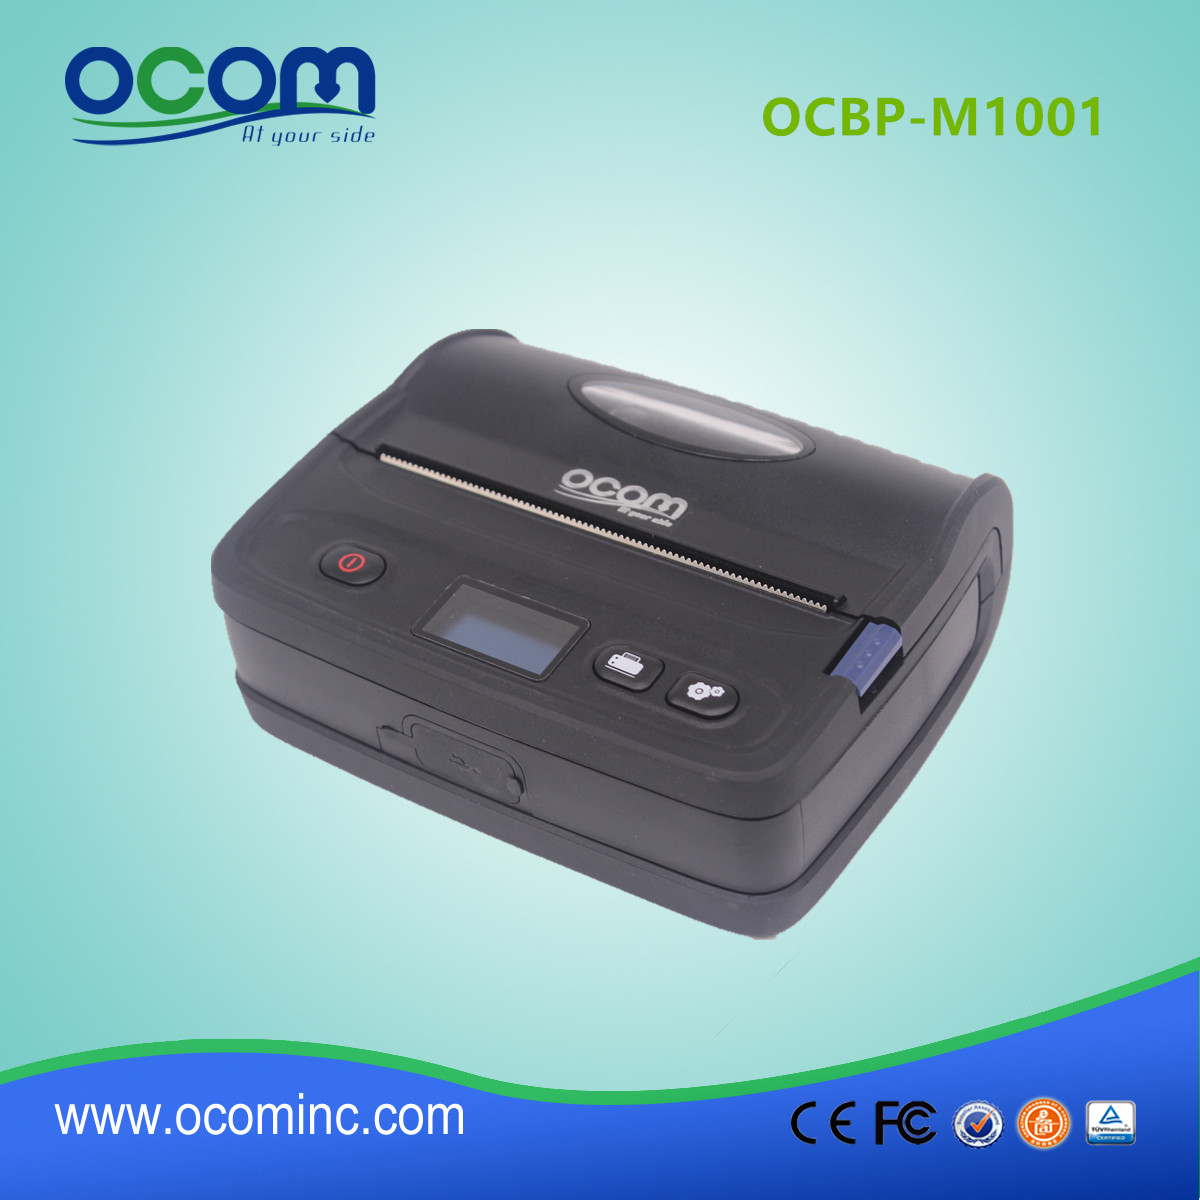 اوكbp-M1001 عاليه الجودة المدمجة بلوتوث الحرارية الاستلام والتسمية الطابعة